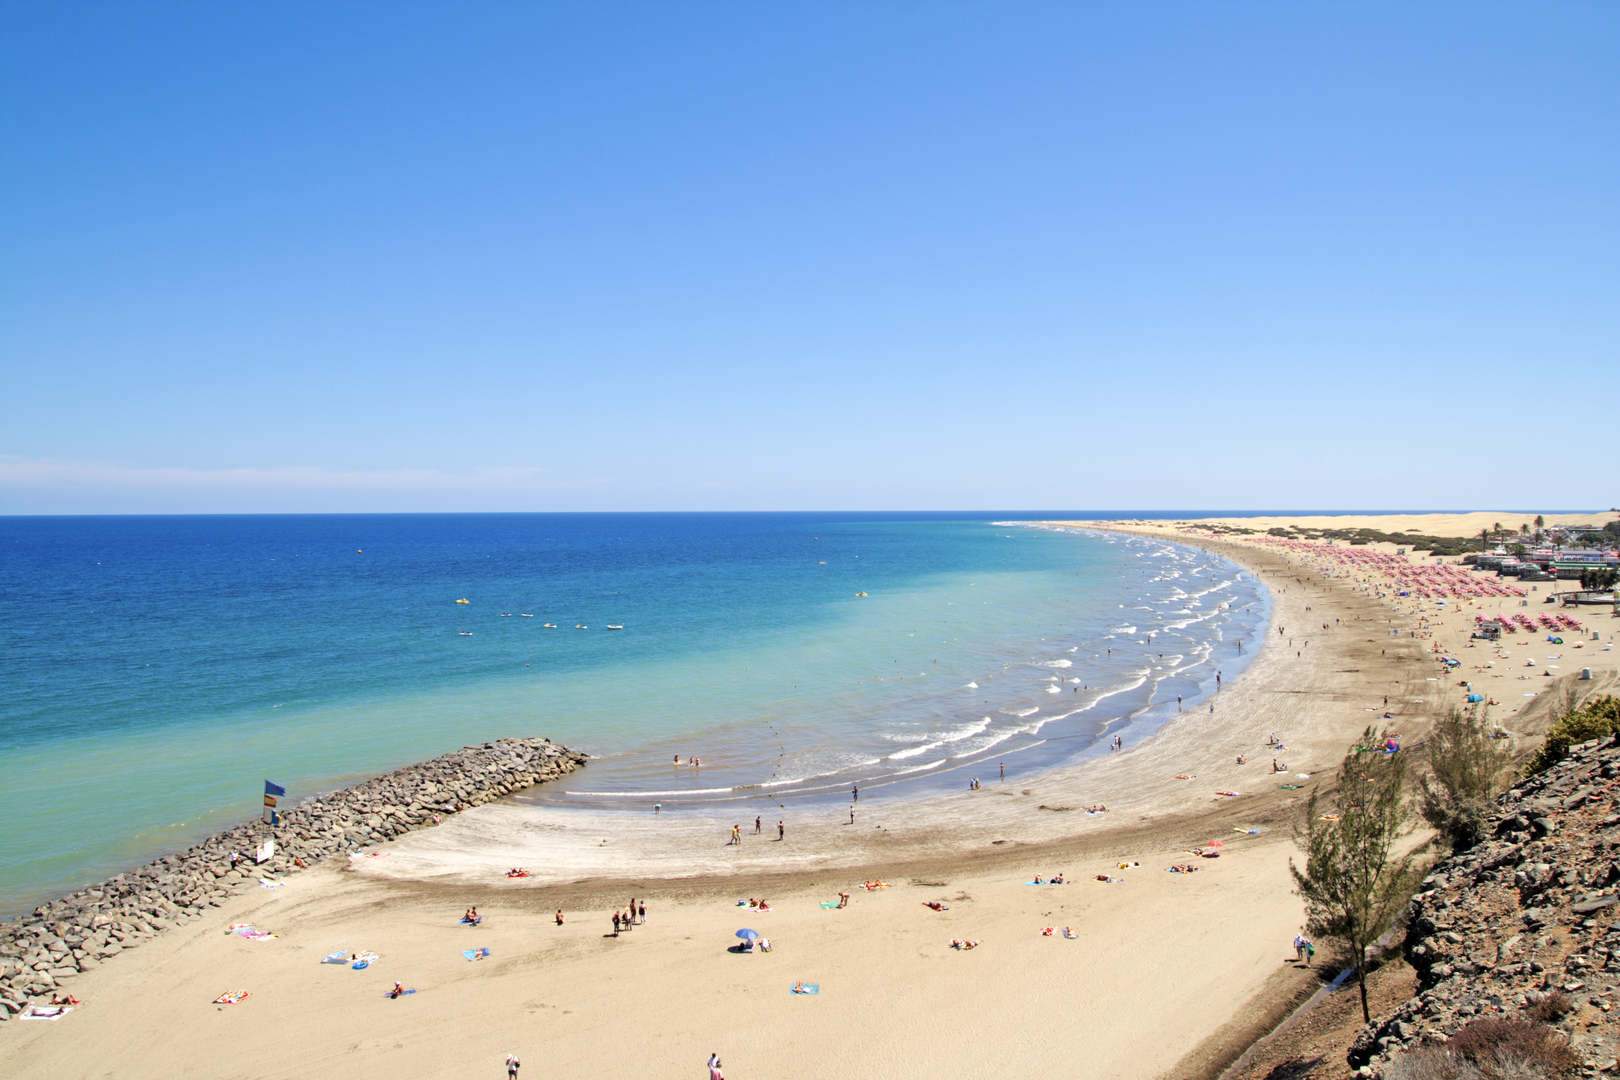 Playa del Inglés Beach